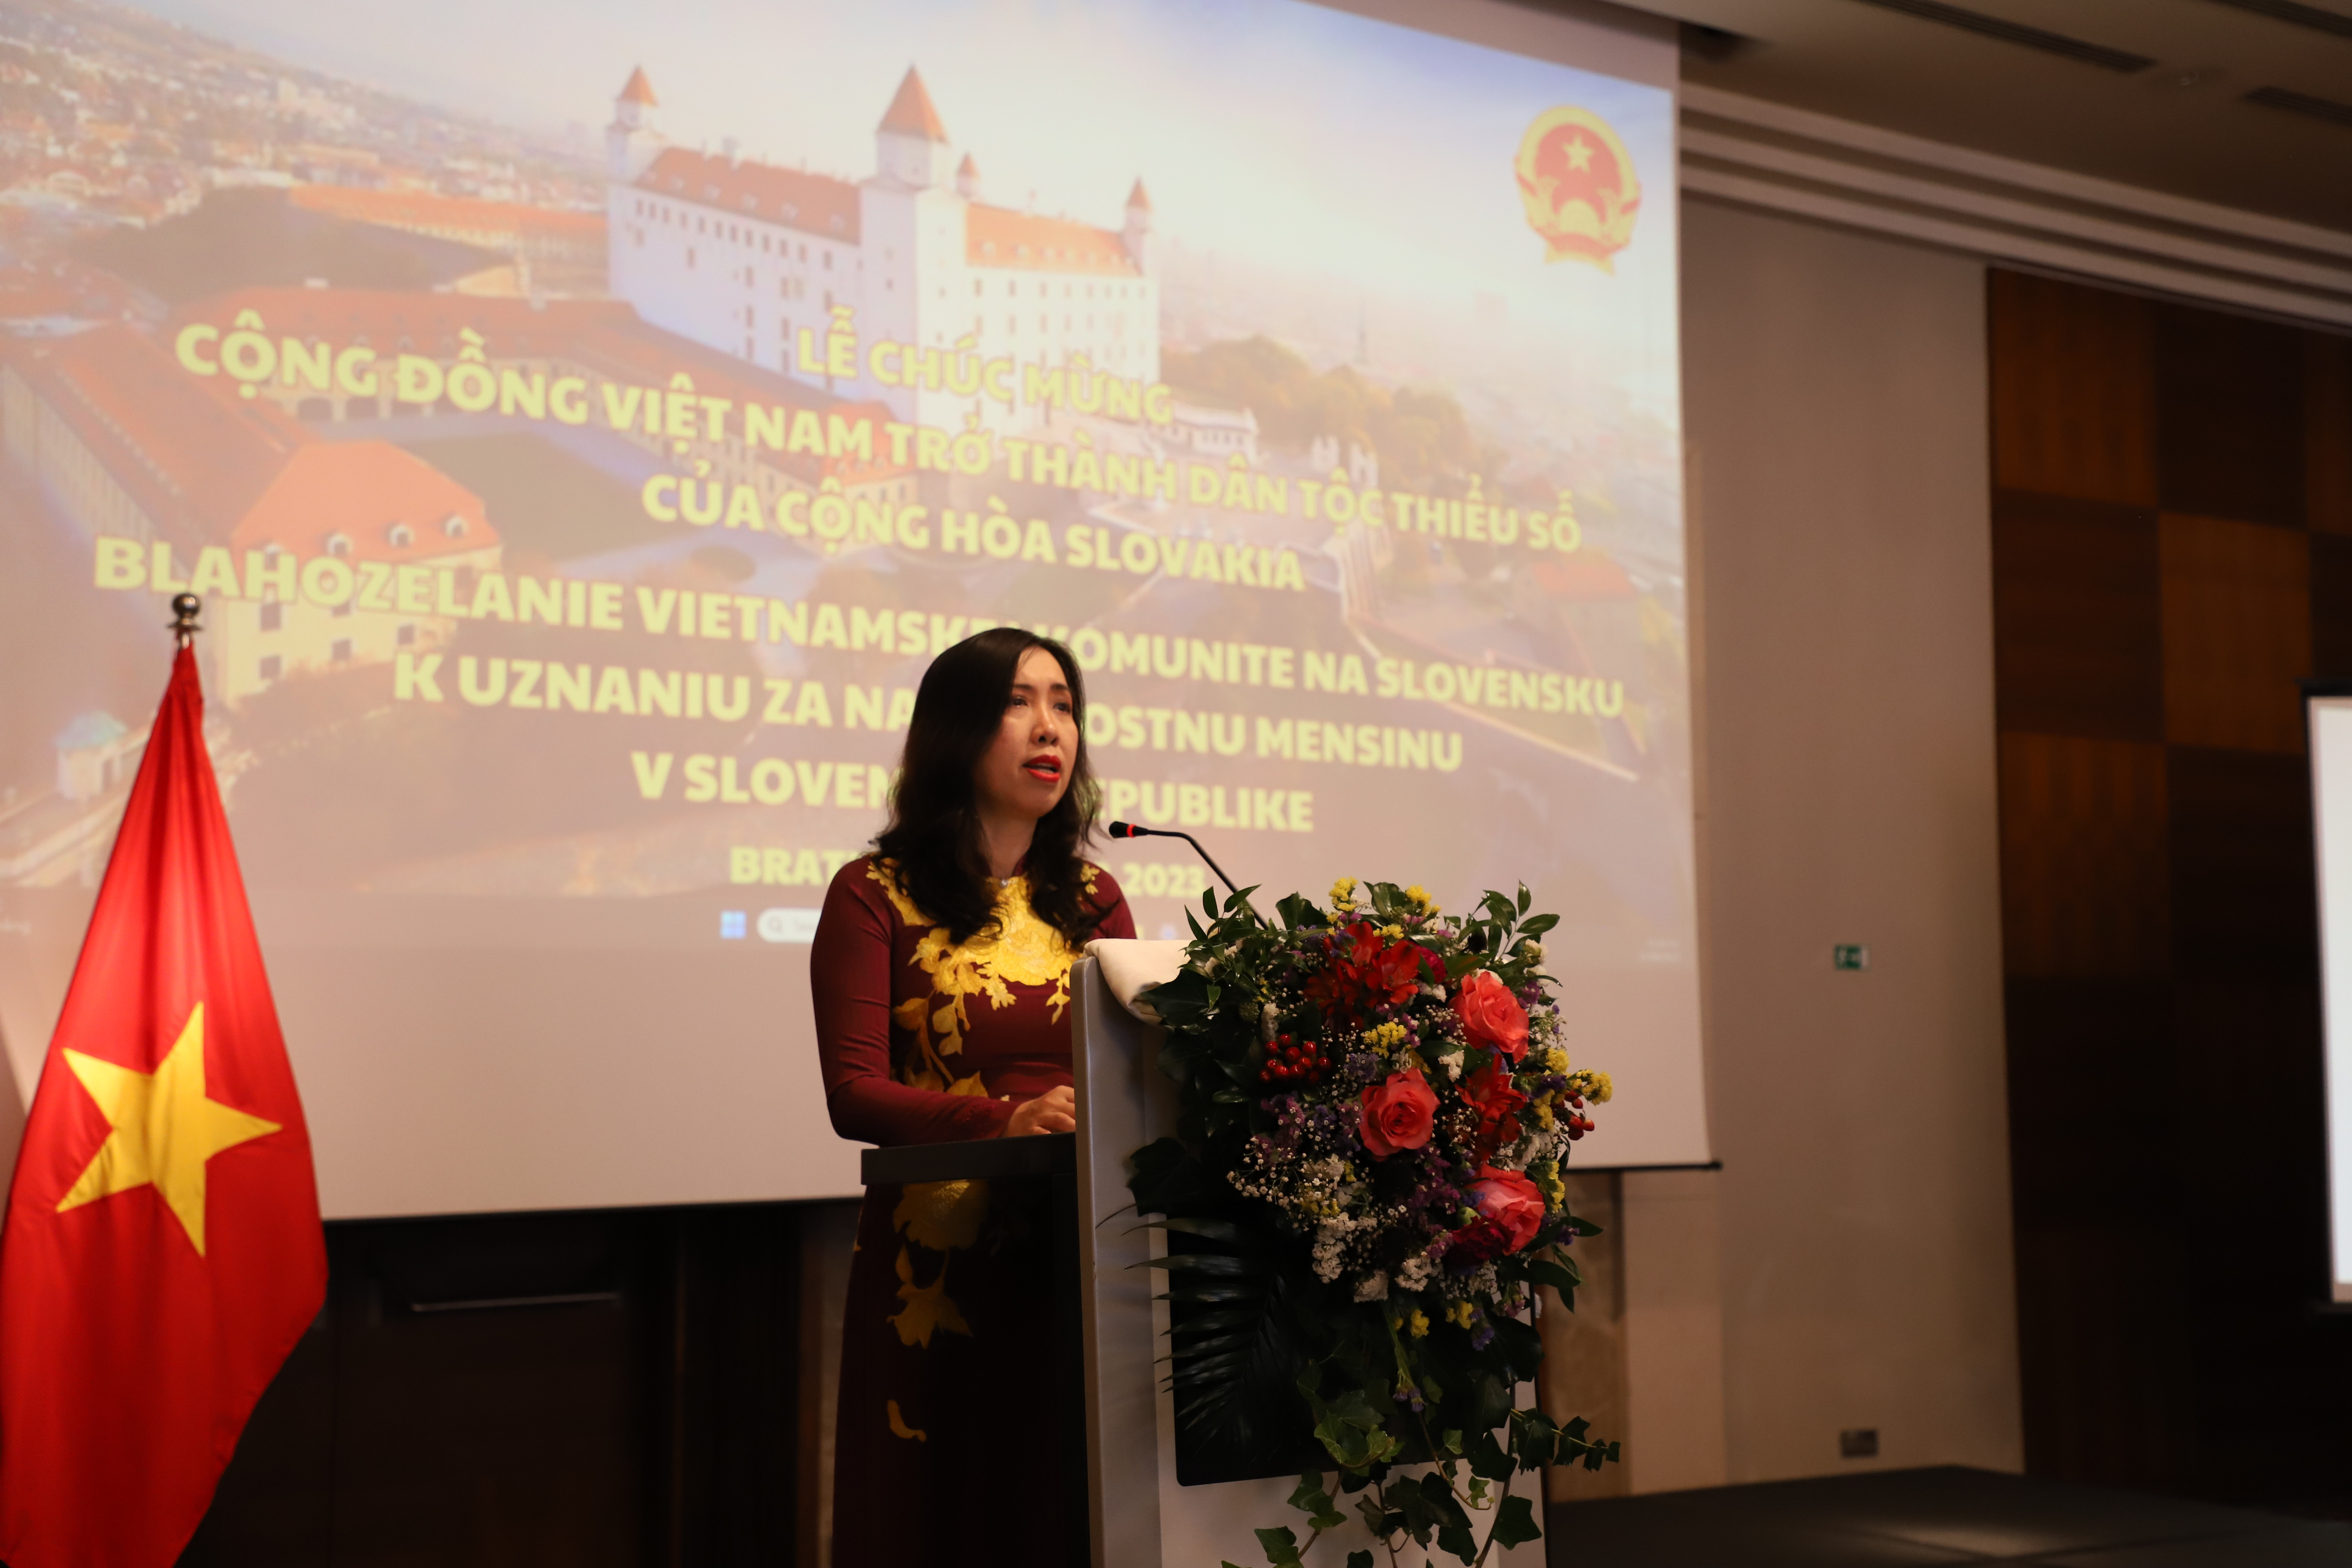 Lễ chúc mừng cộng đồng người Việt tại Slovakia được công nhận dân tộc thiểu số của sở tại